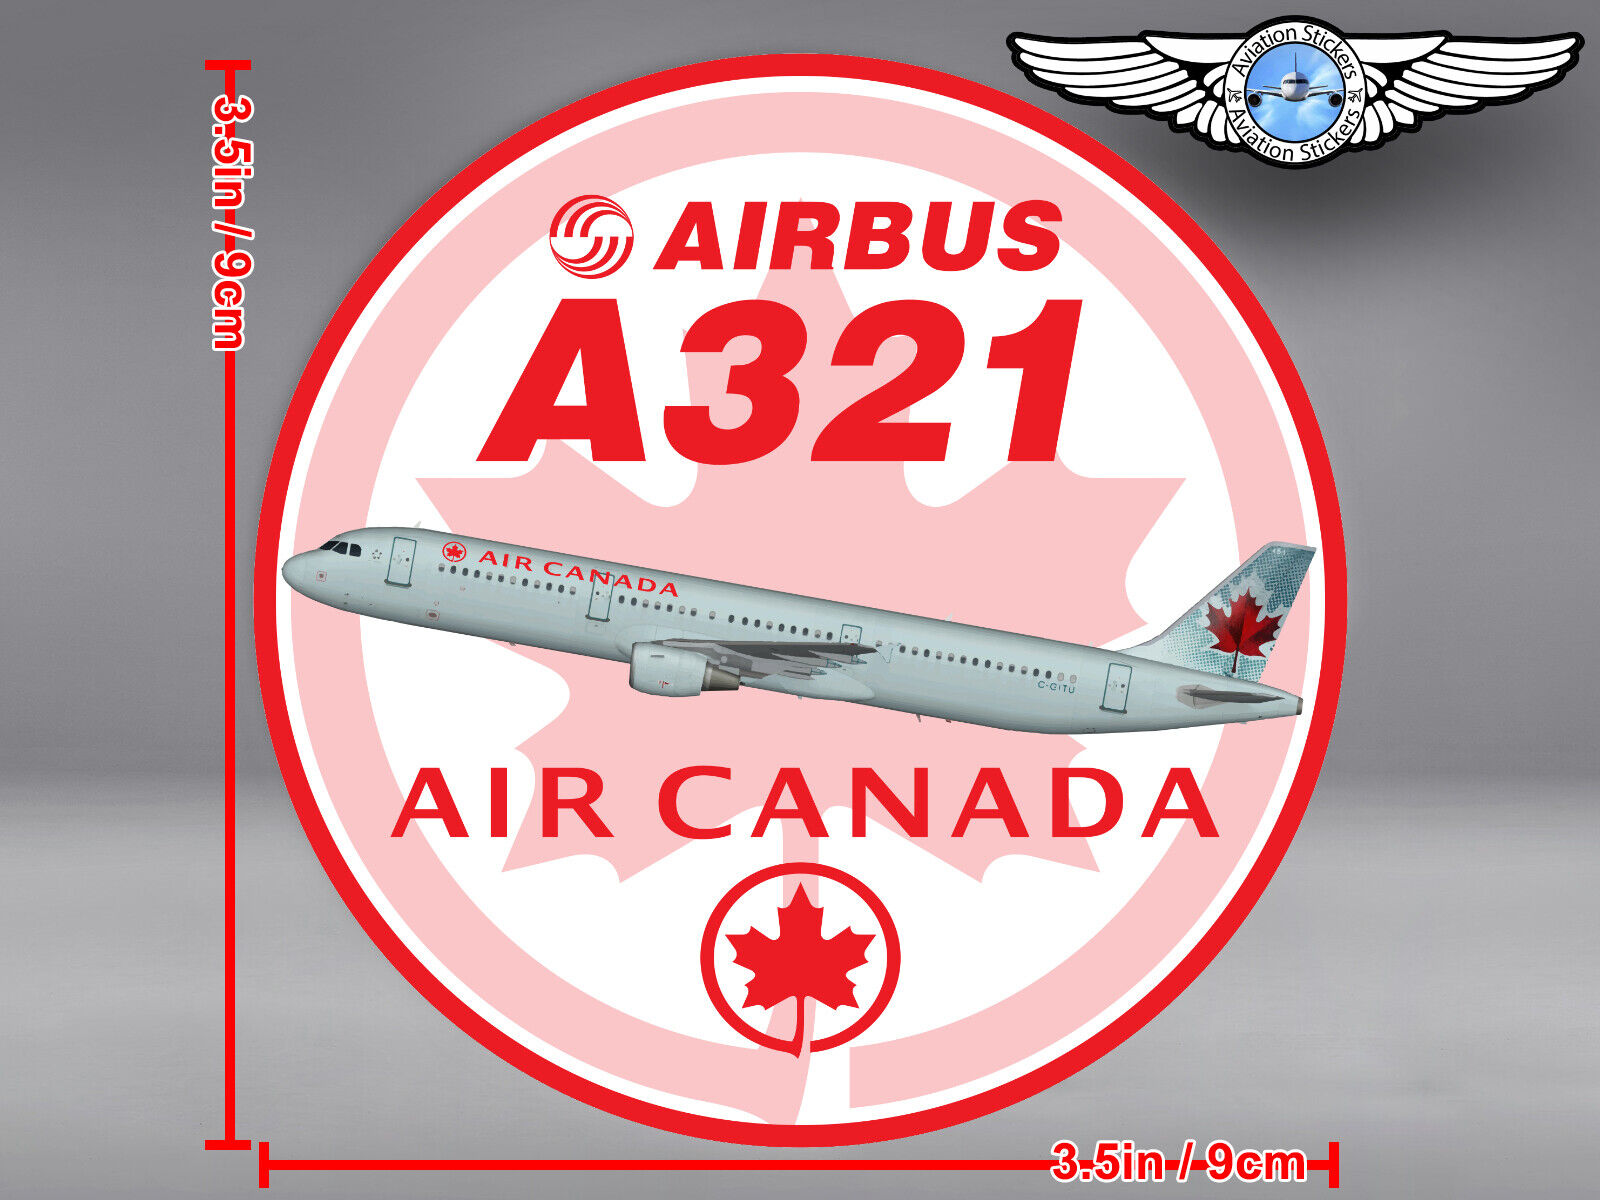 AIR CANADA AIRBUS A321 A 321 ROUND DECAL / STICKER